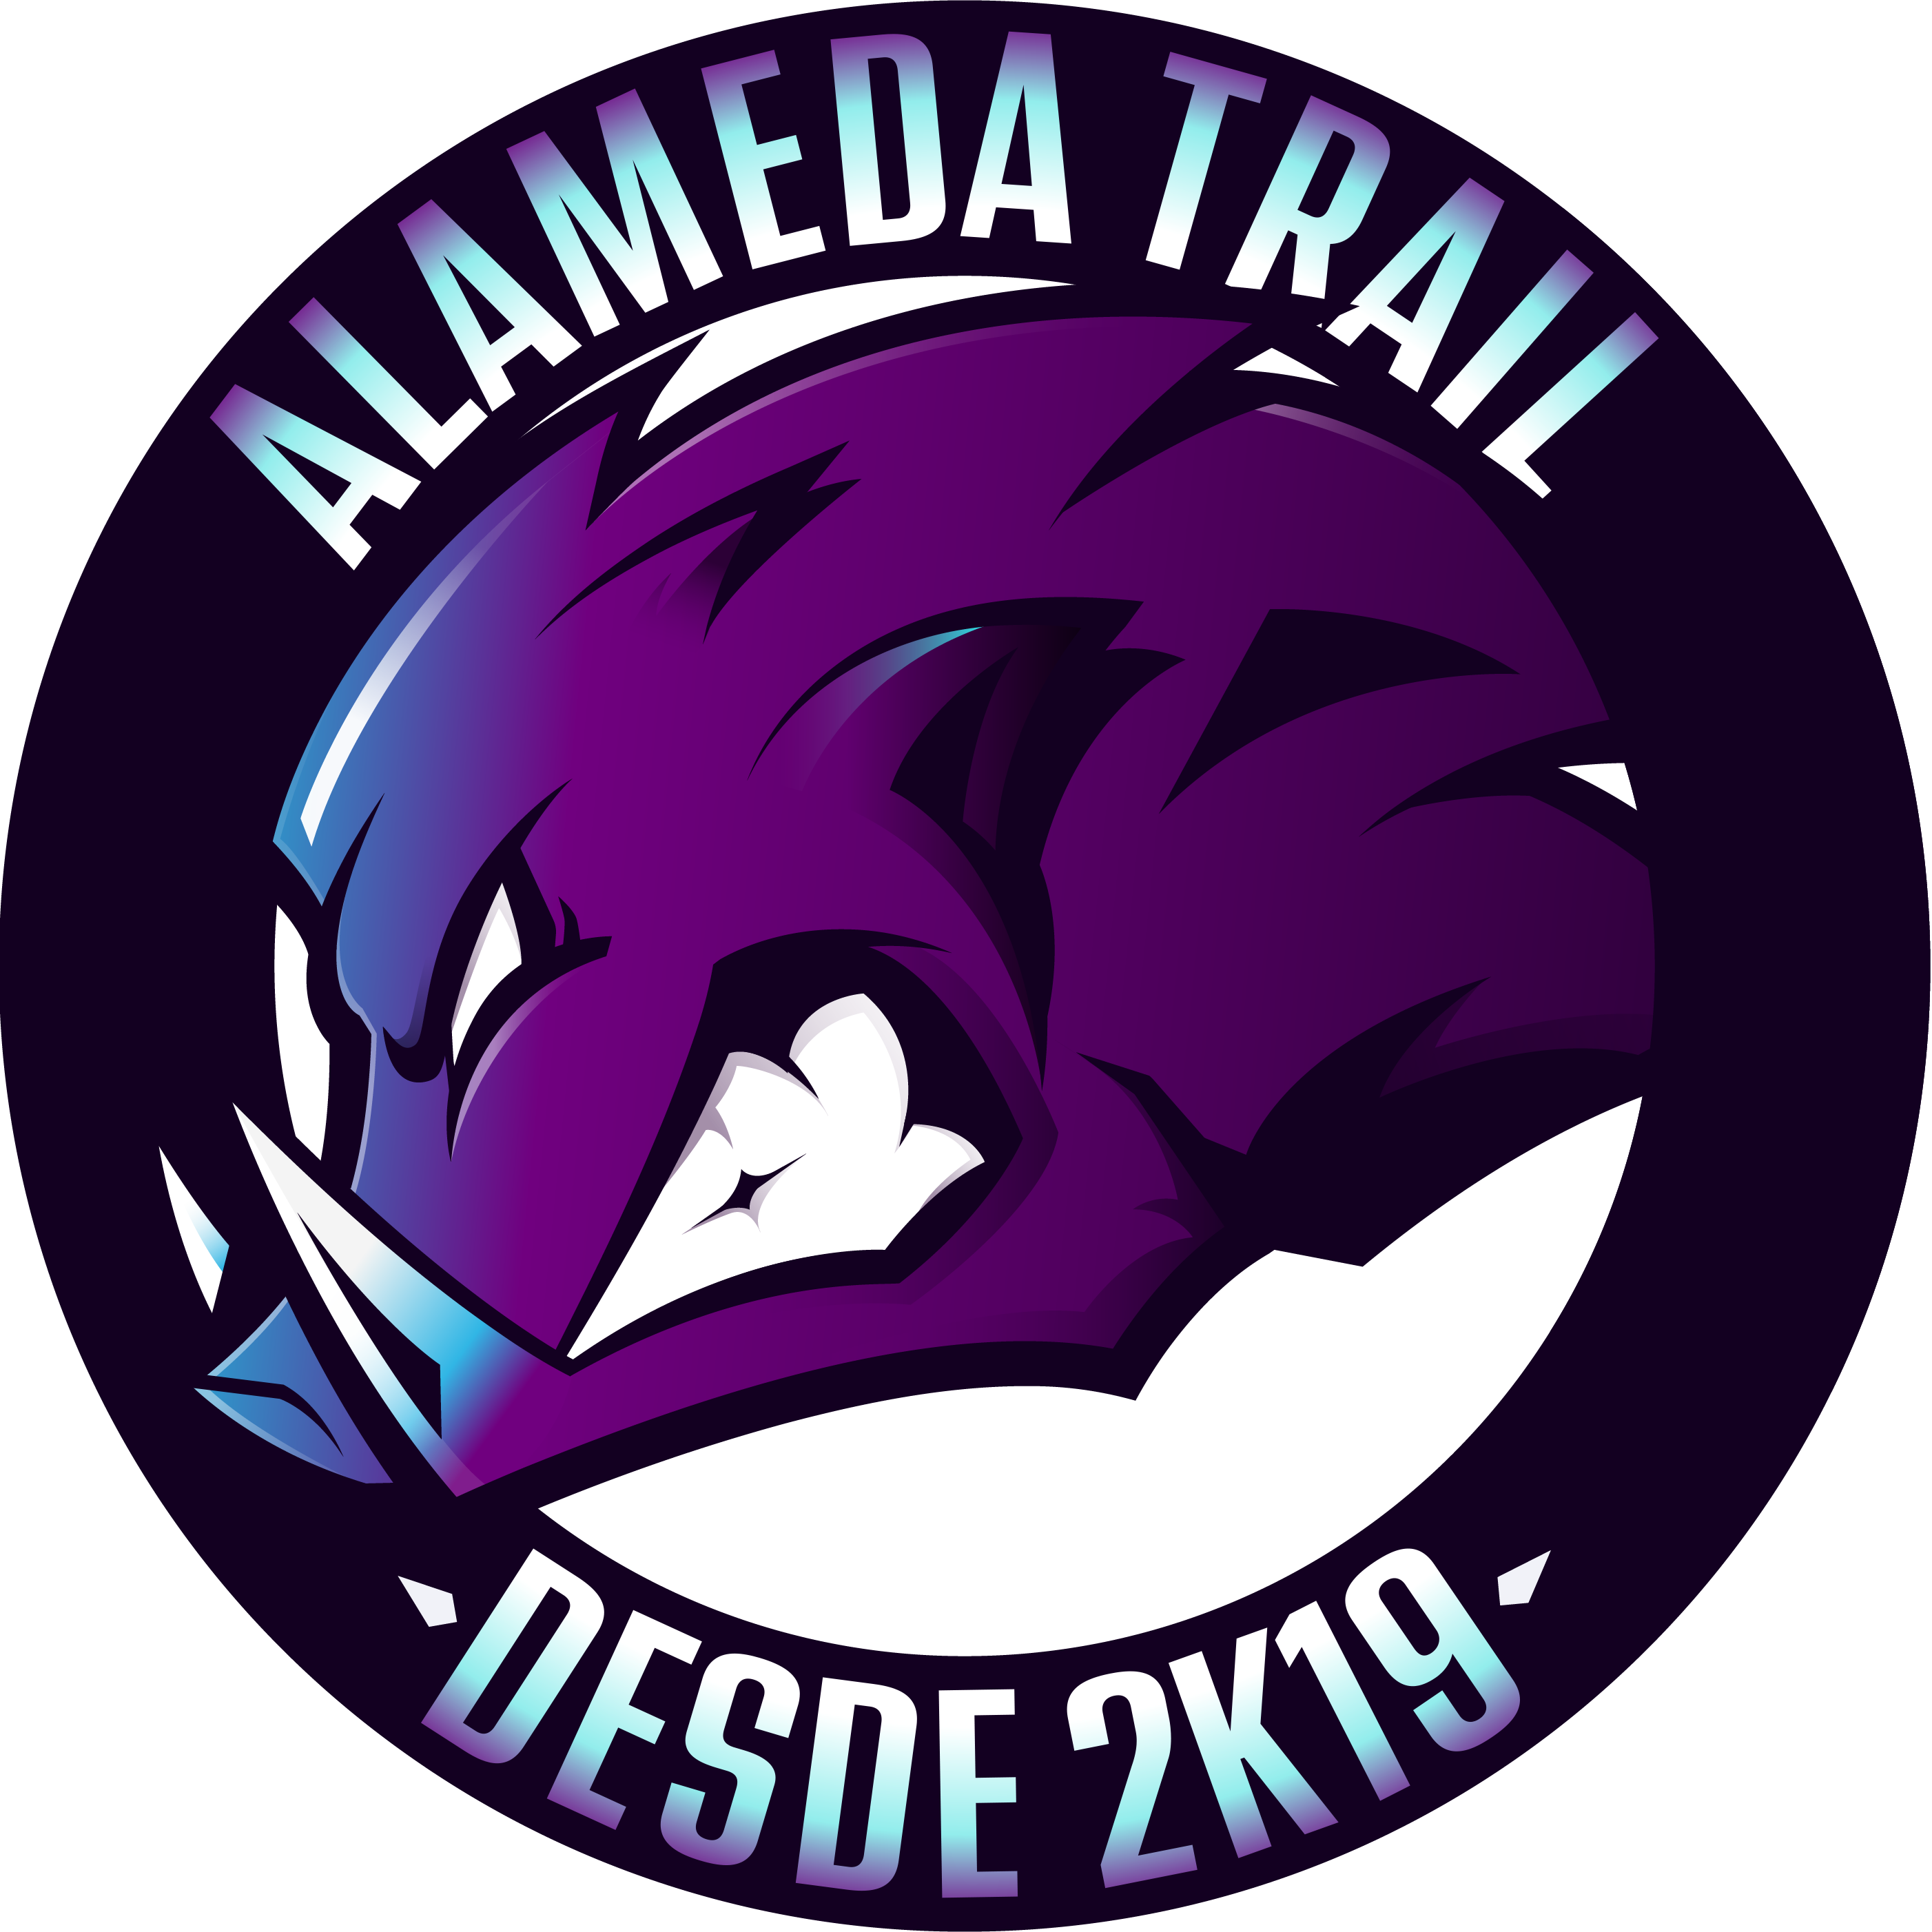 Alameda Trail